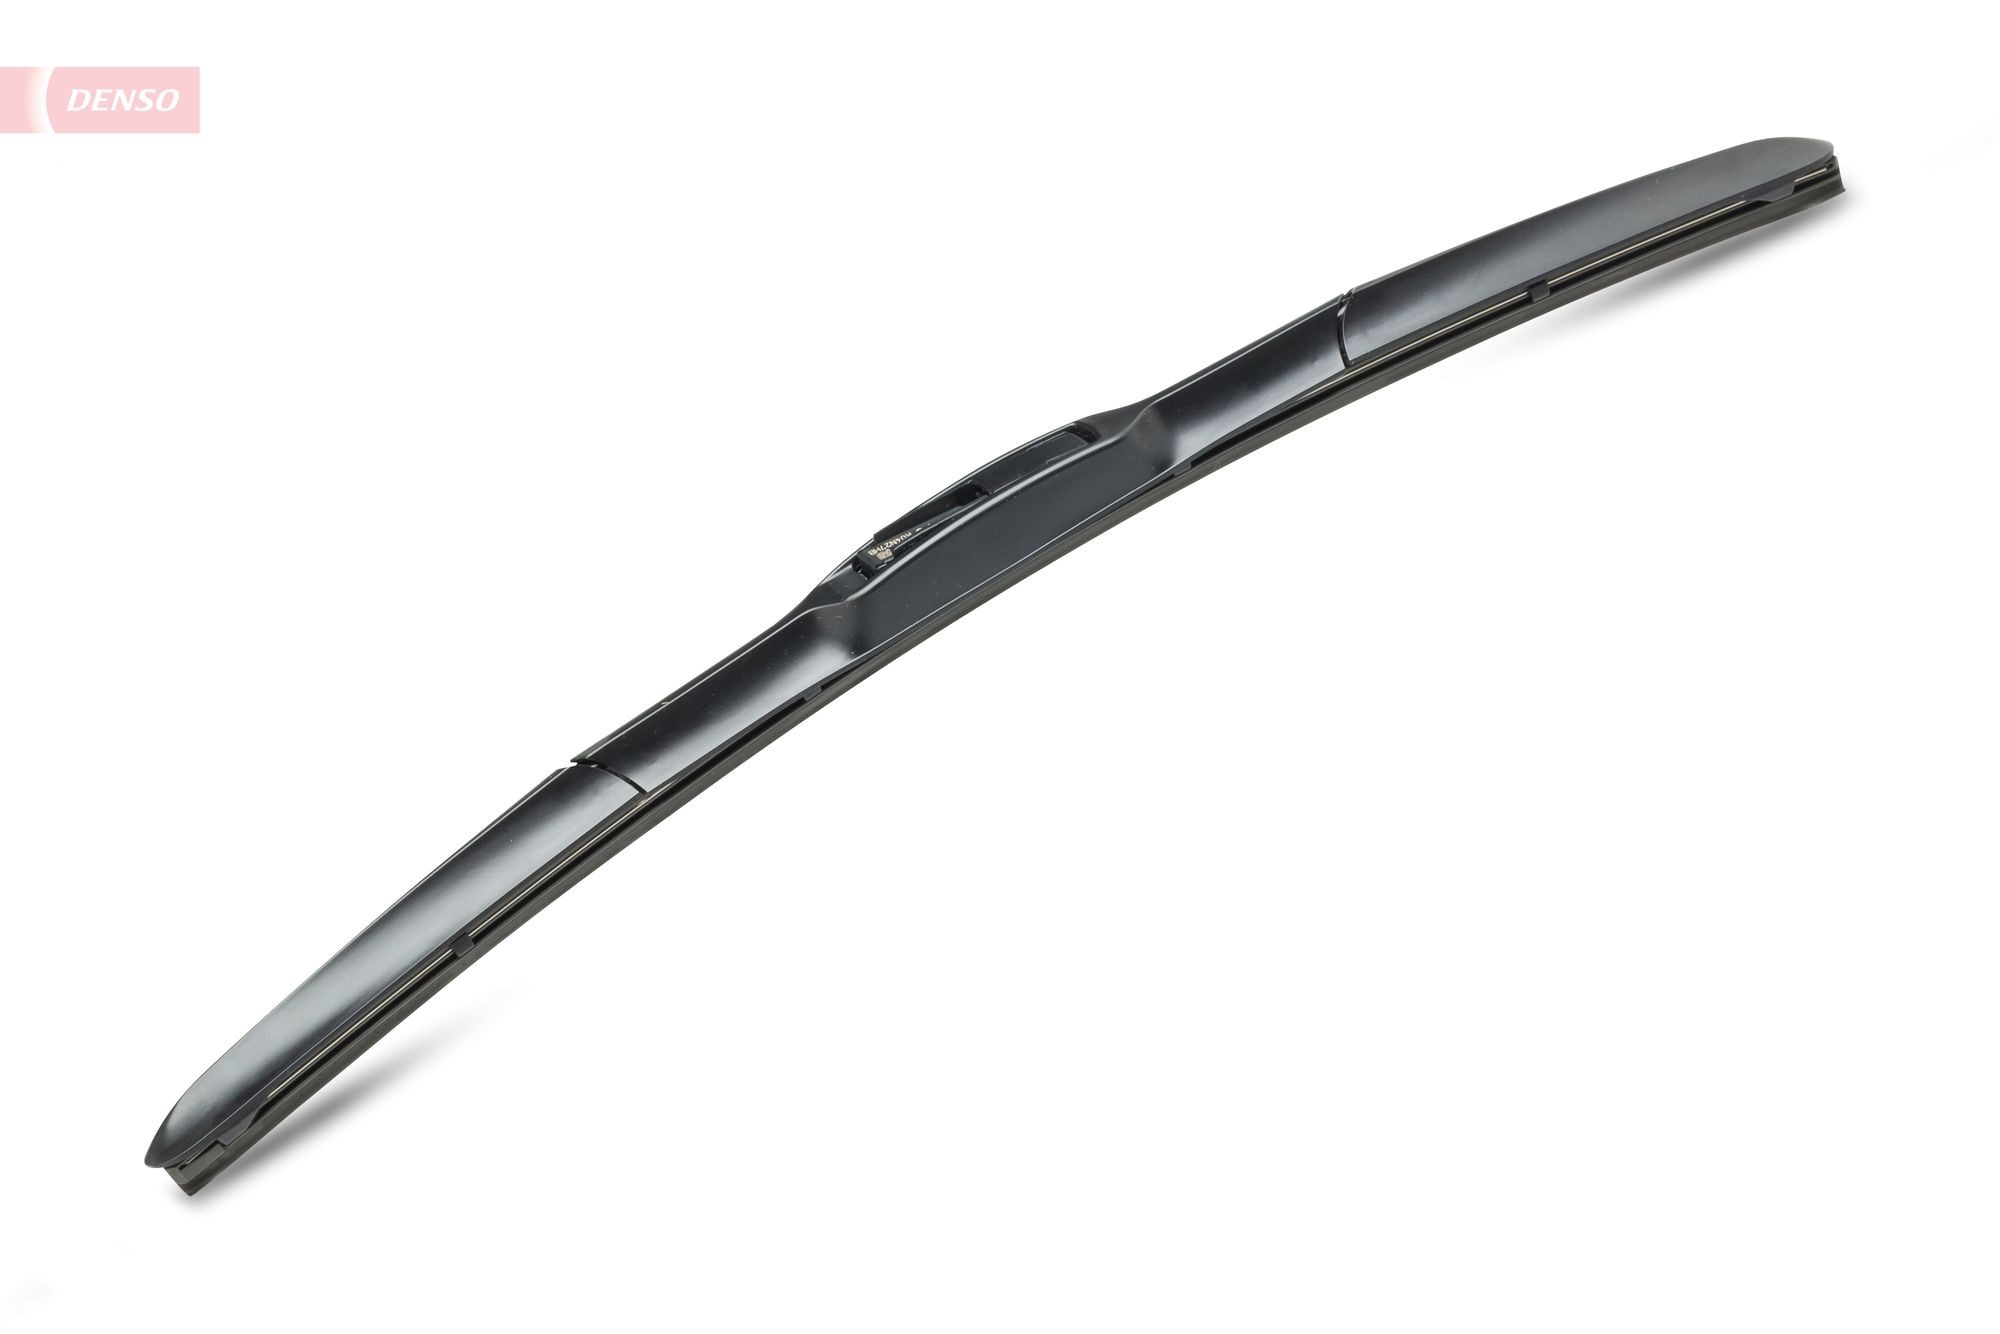 DENSO Hybrid 450 mm, Hybrid Wiper Blade, 18 Inch Wiper blades DUR-045R buy